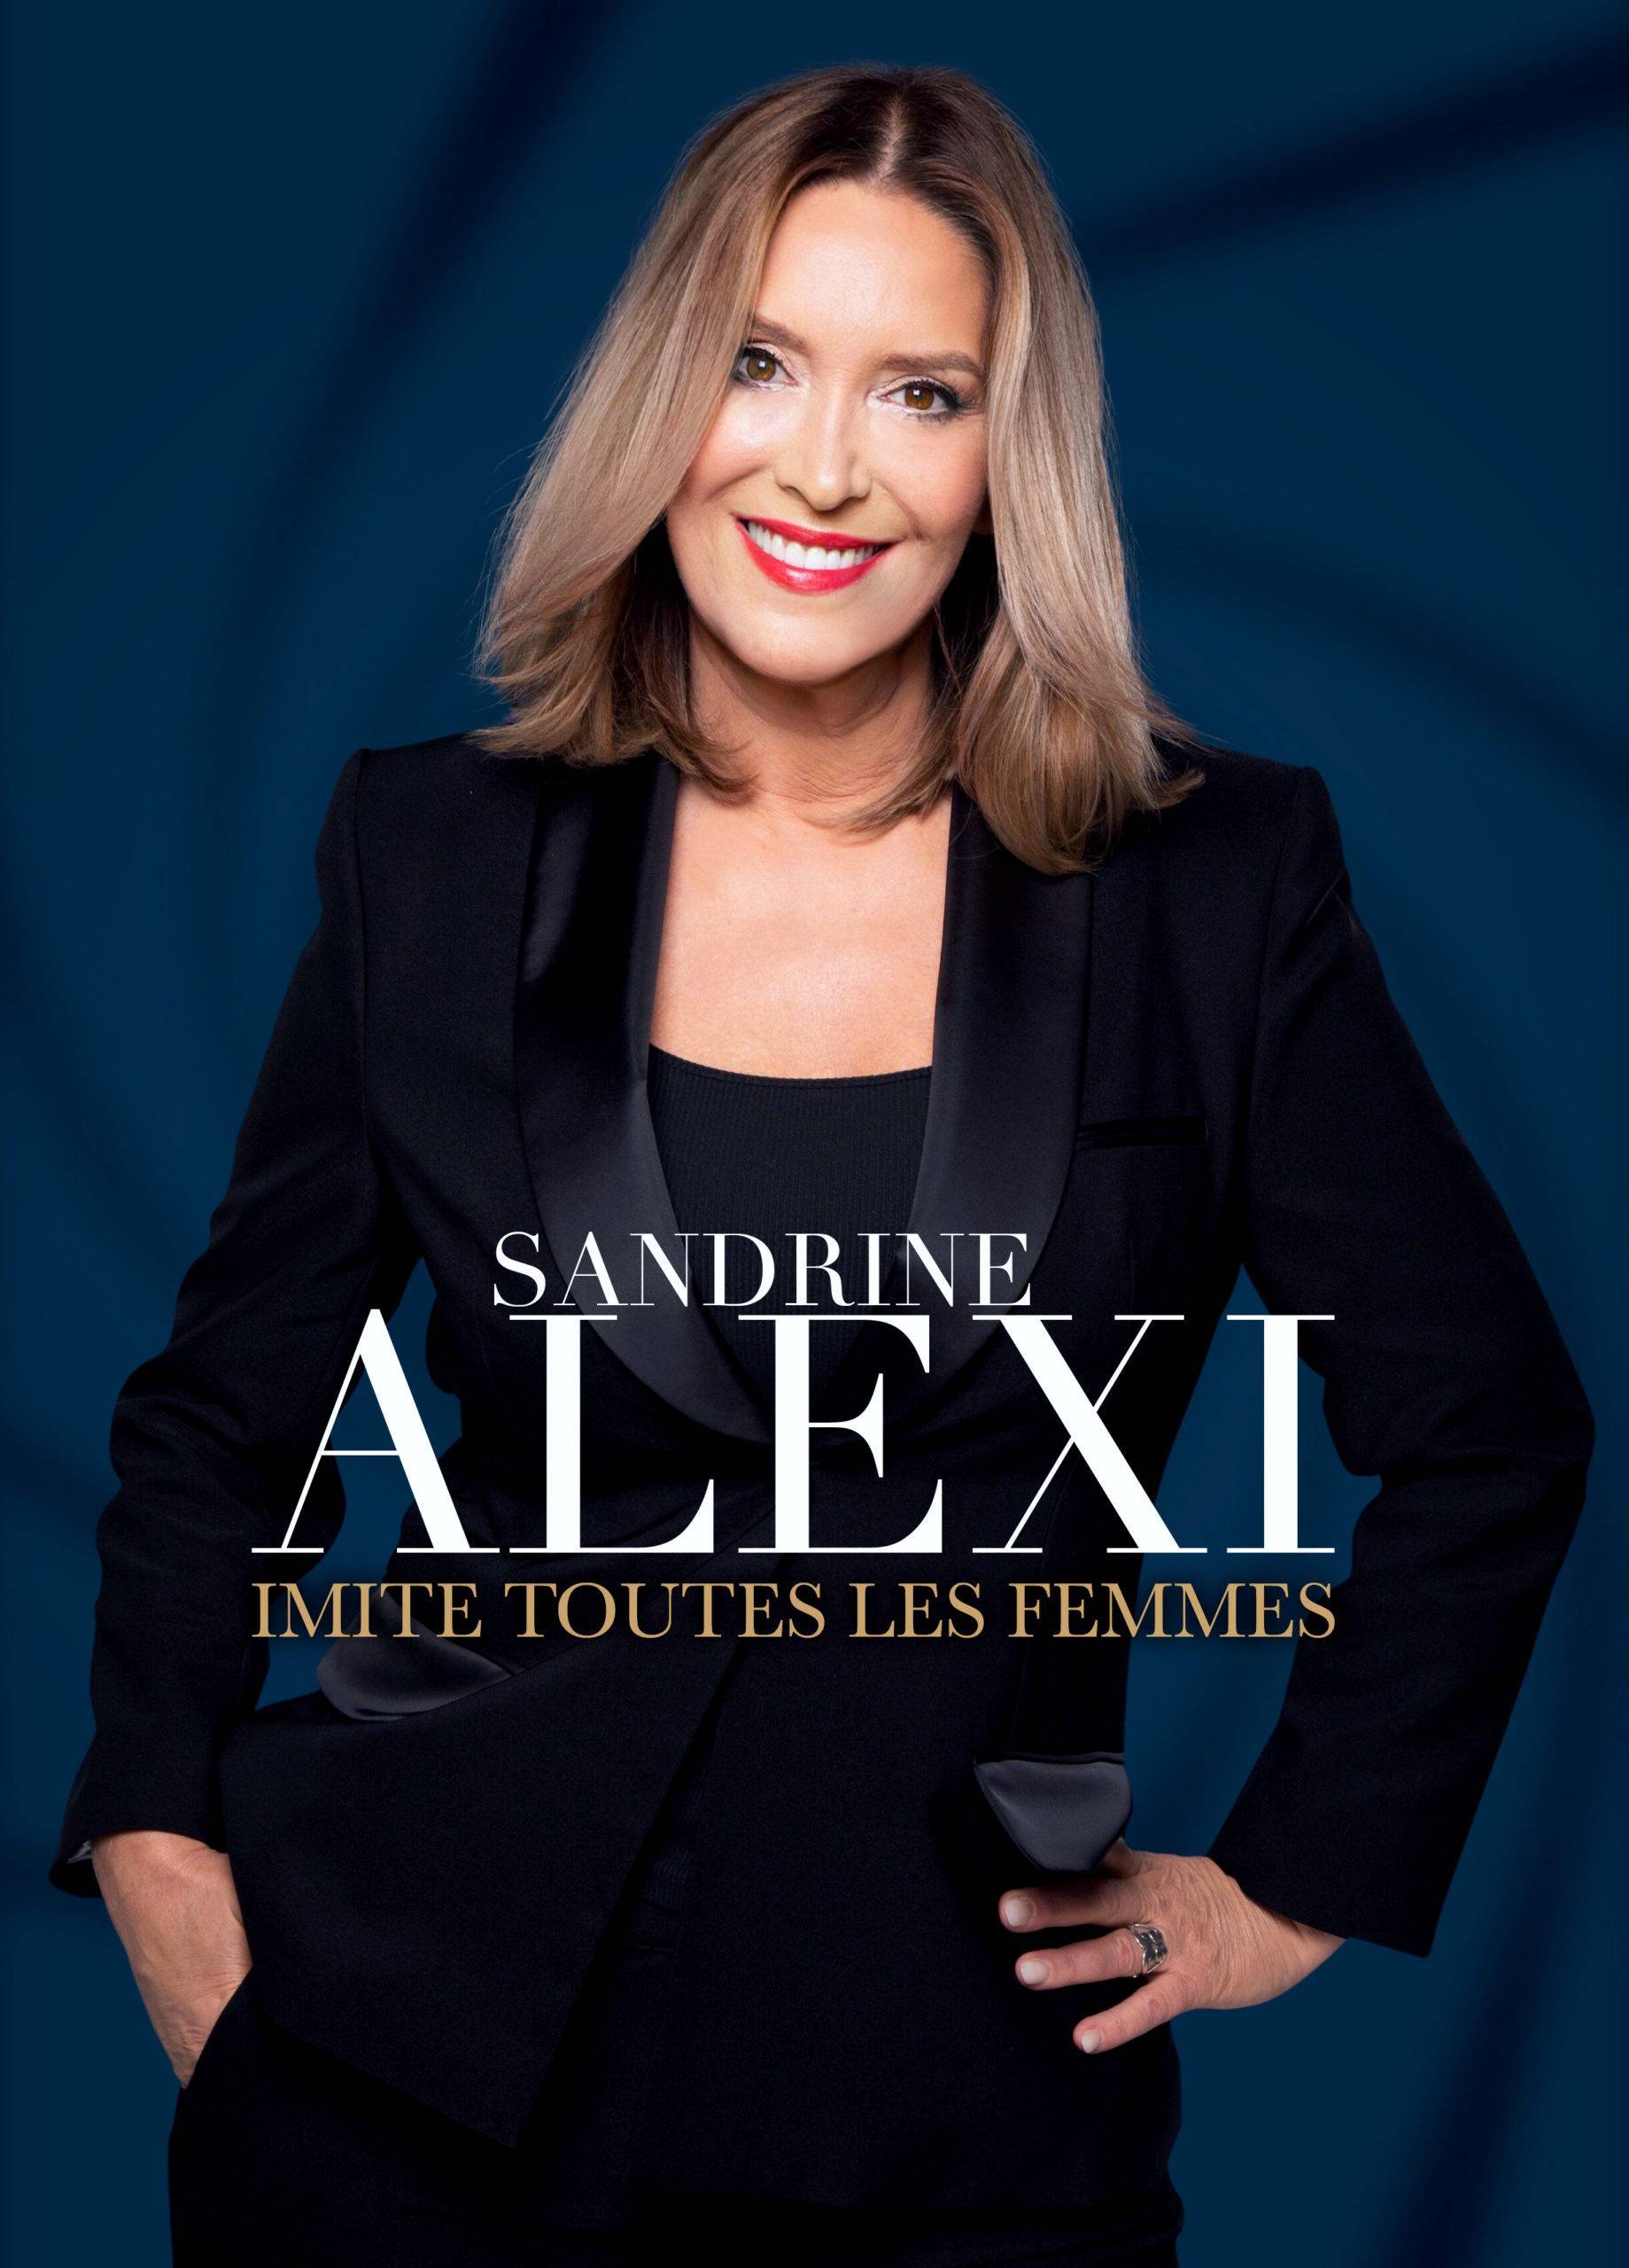 Sandrine Alexi - Centre Culturel Municipal Jacques Prévert - Villeparisis (77)